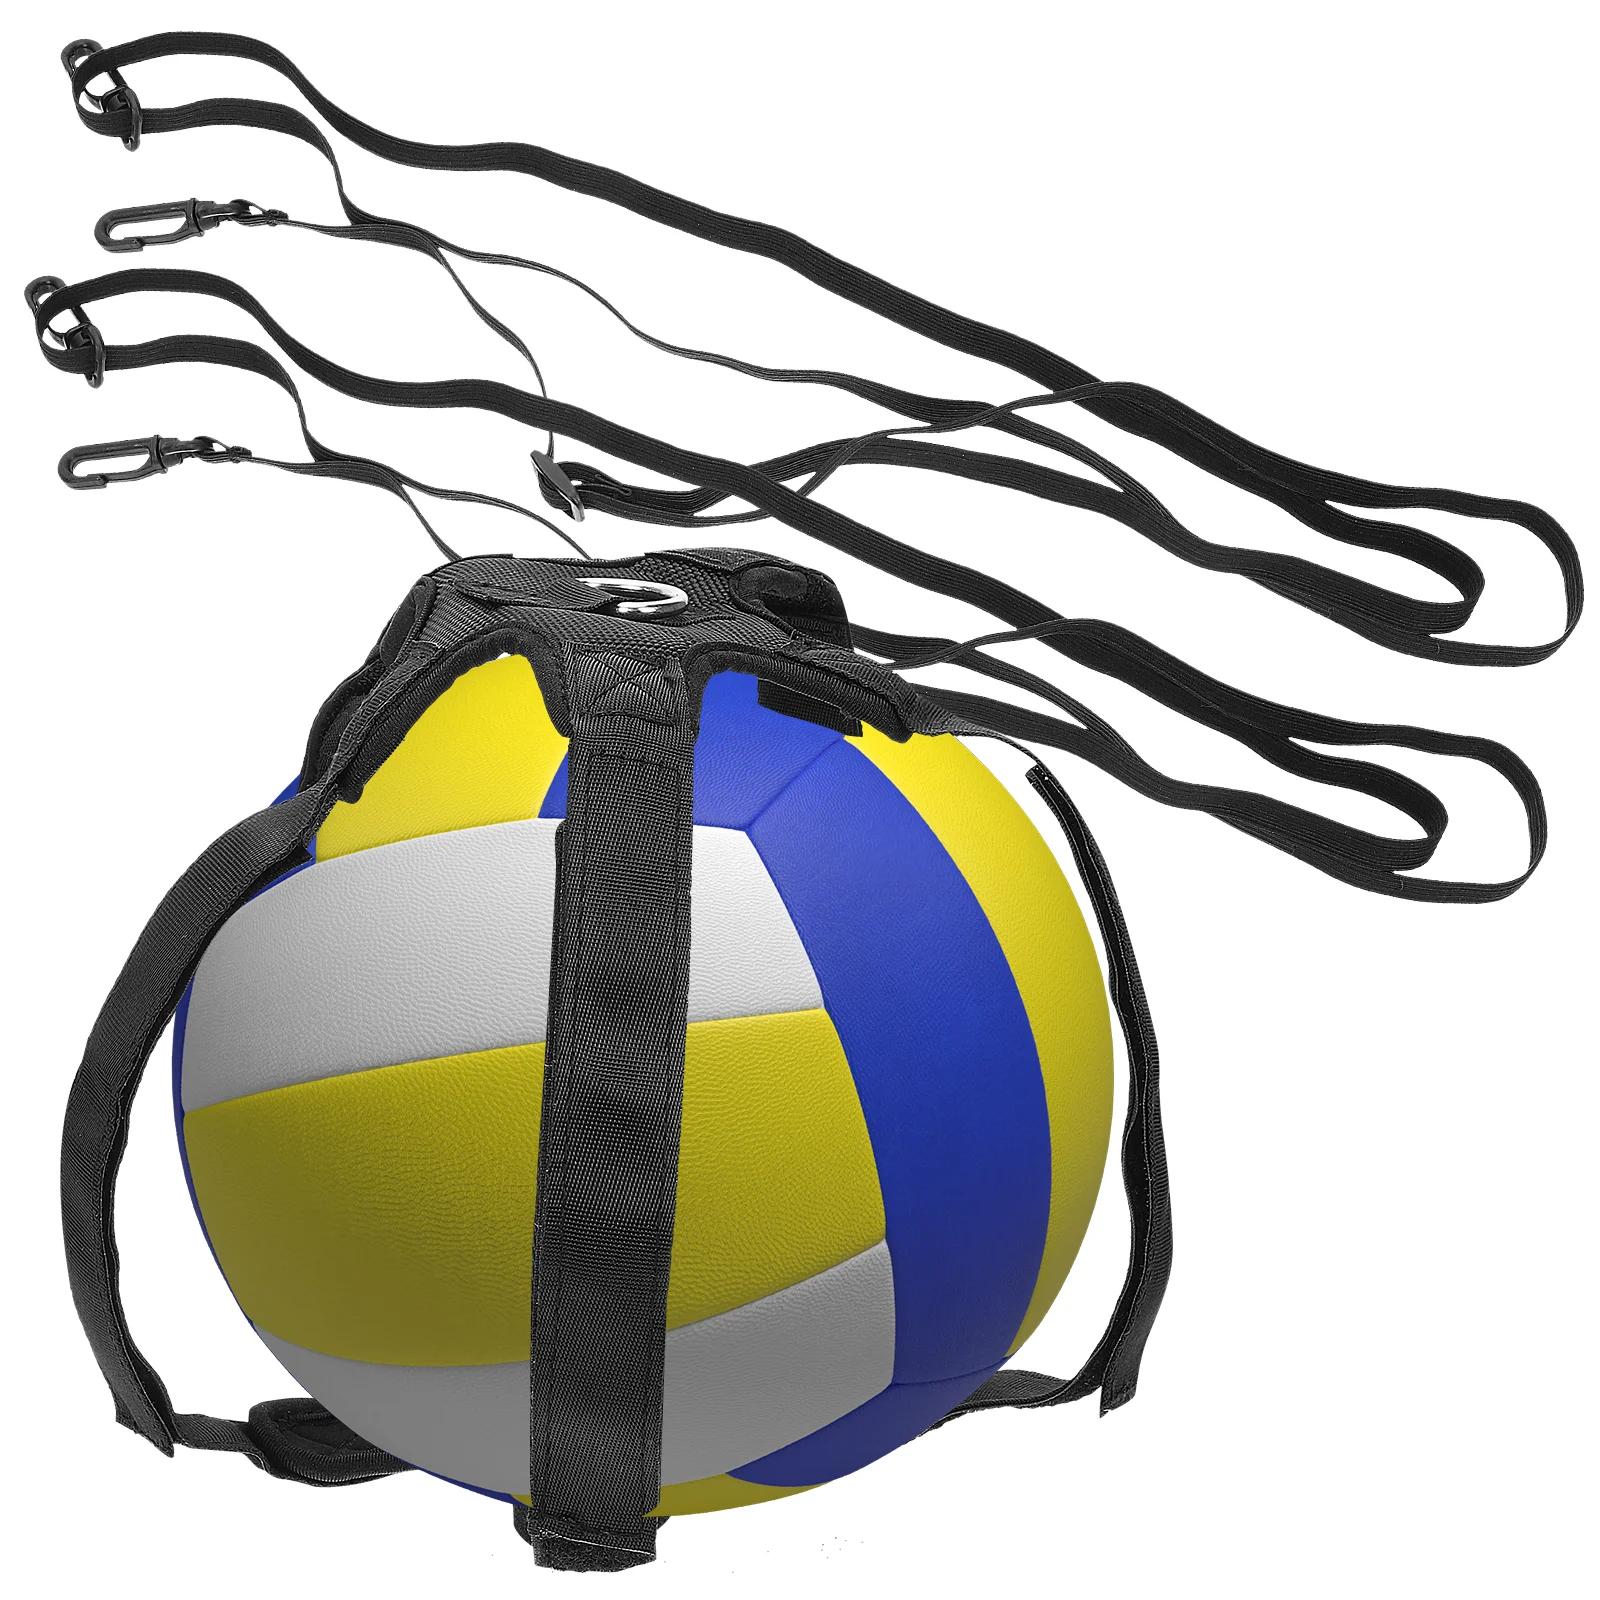 

Ремень для волейбола, тренировочное оборудование, тренажер, портативный тестер с вертикальными шипами